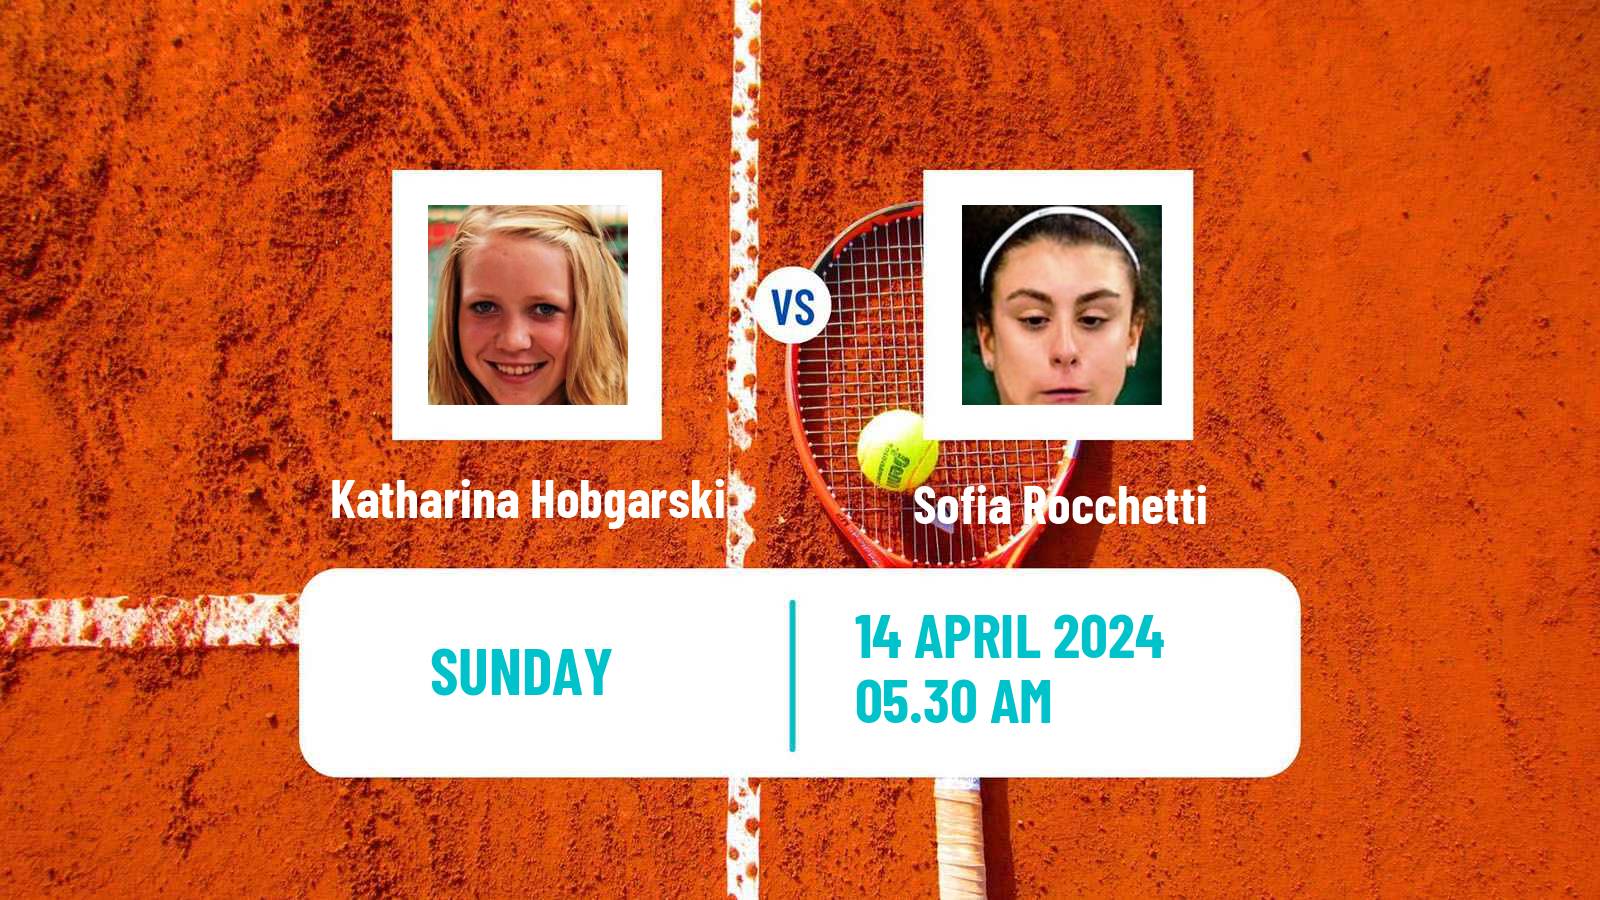 Tennis ITF W35 Hammamet 4 Women Katharina Hobgarski - Sofia Rocchetti